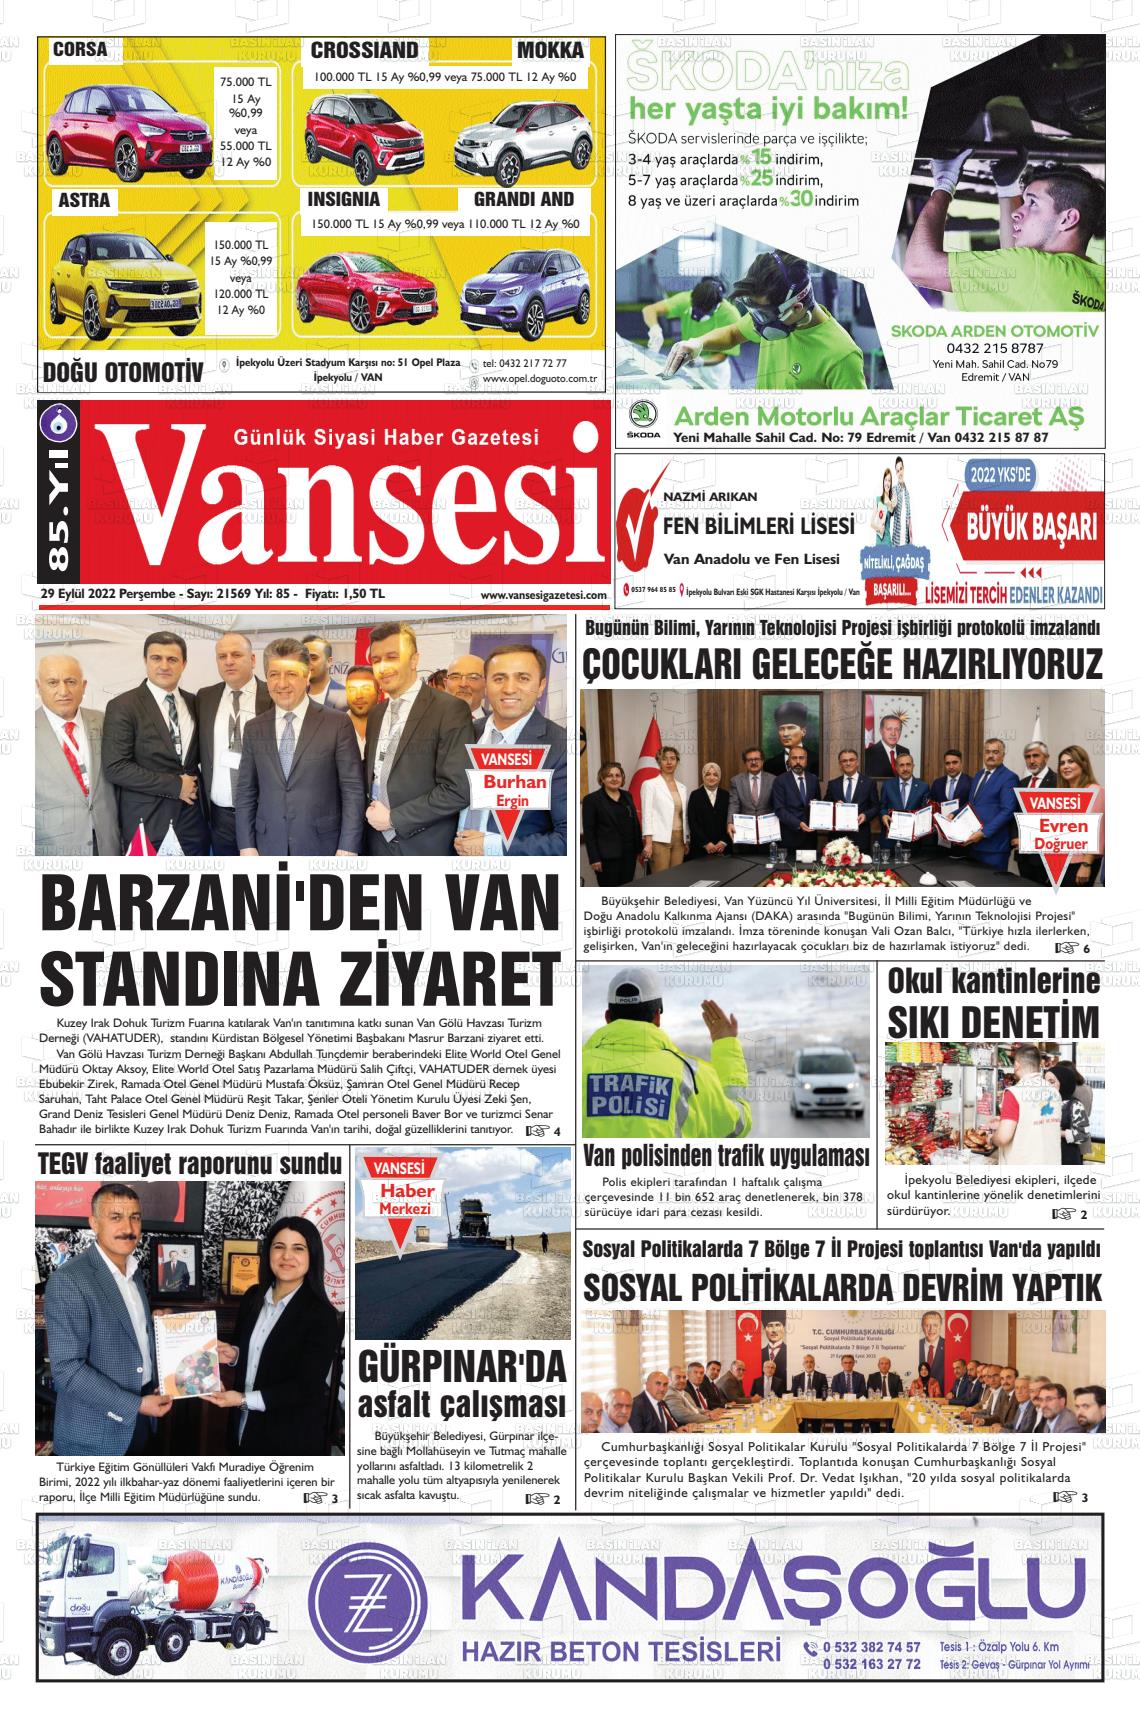 29 Eylül 2022 Vansesi Gazete Manşeti